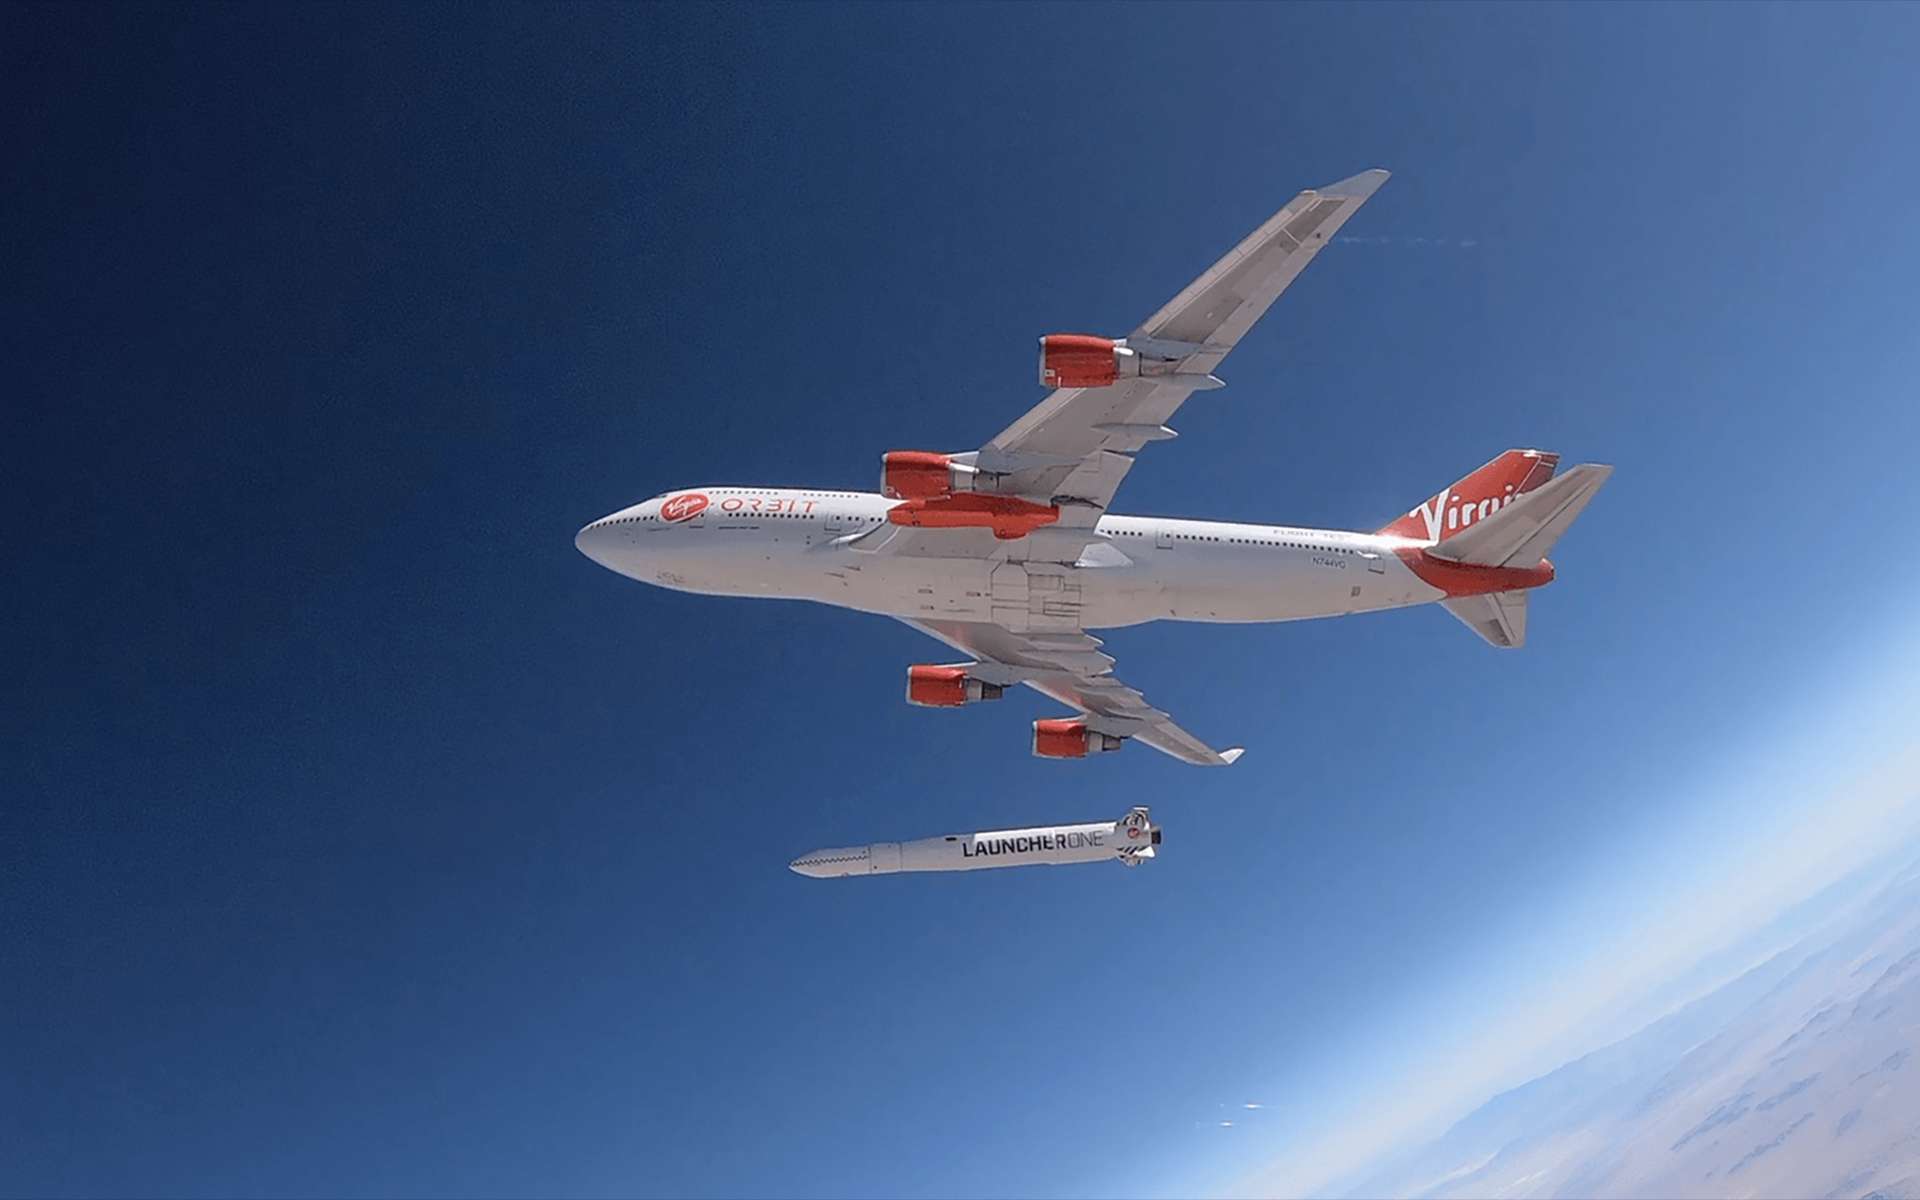 Le Launcher One est un lanceur aéroporté qui « décolle » depuis un avion. Développé par Virgin Orbit, filiale de Virgin Galactic, sa mise en service est prévu en 2020. © Virgin Orbit